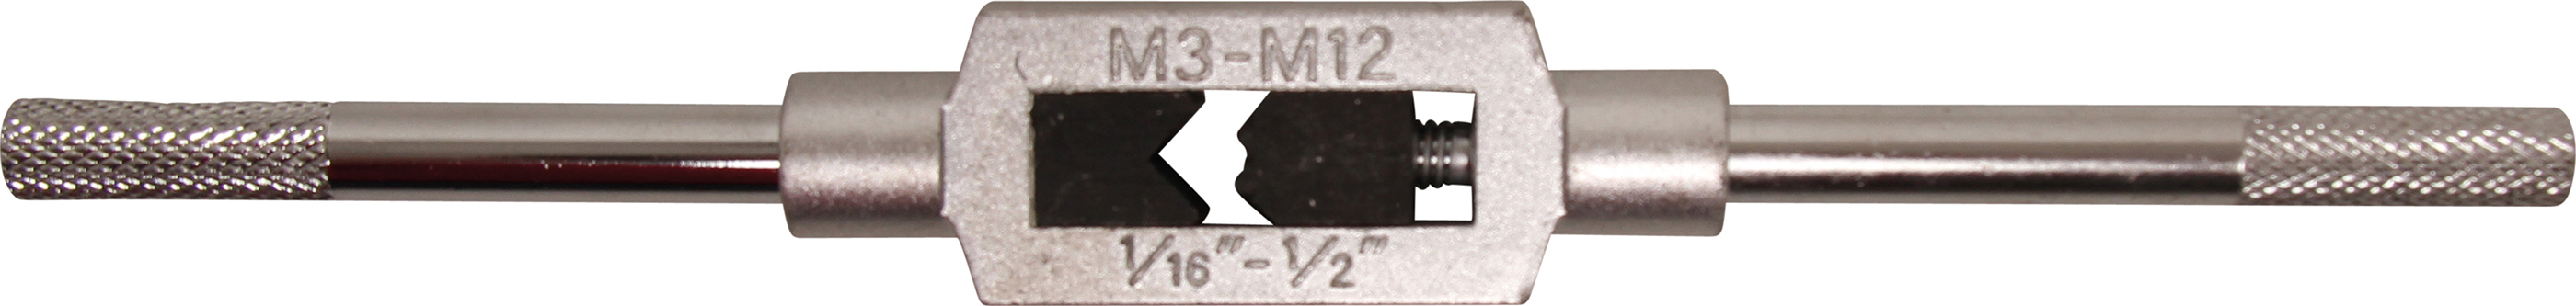 BGS 1900-1 Port tarod pentru M3 - M12